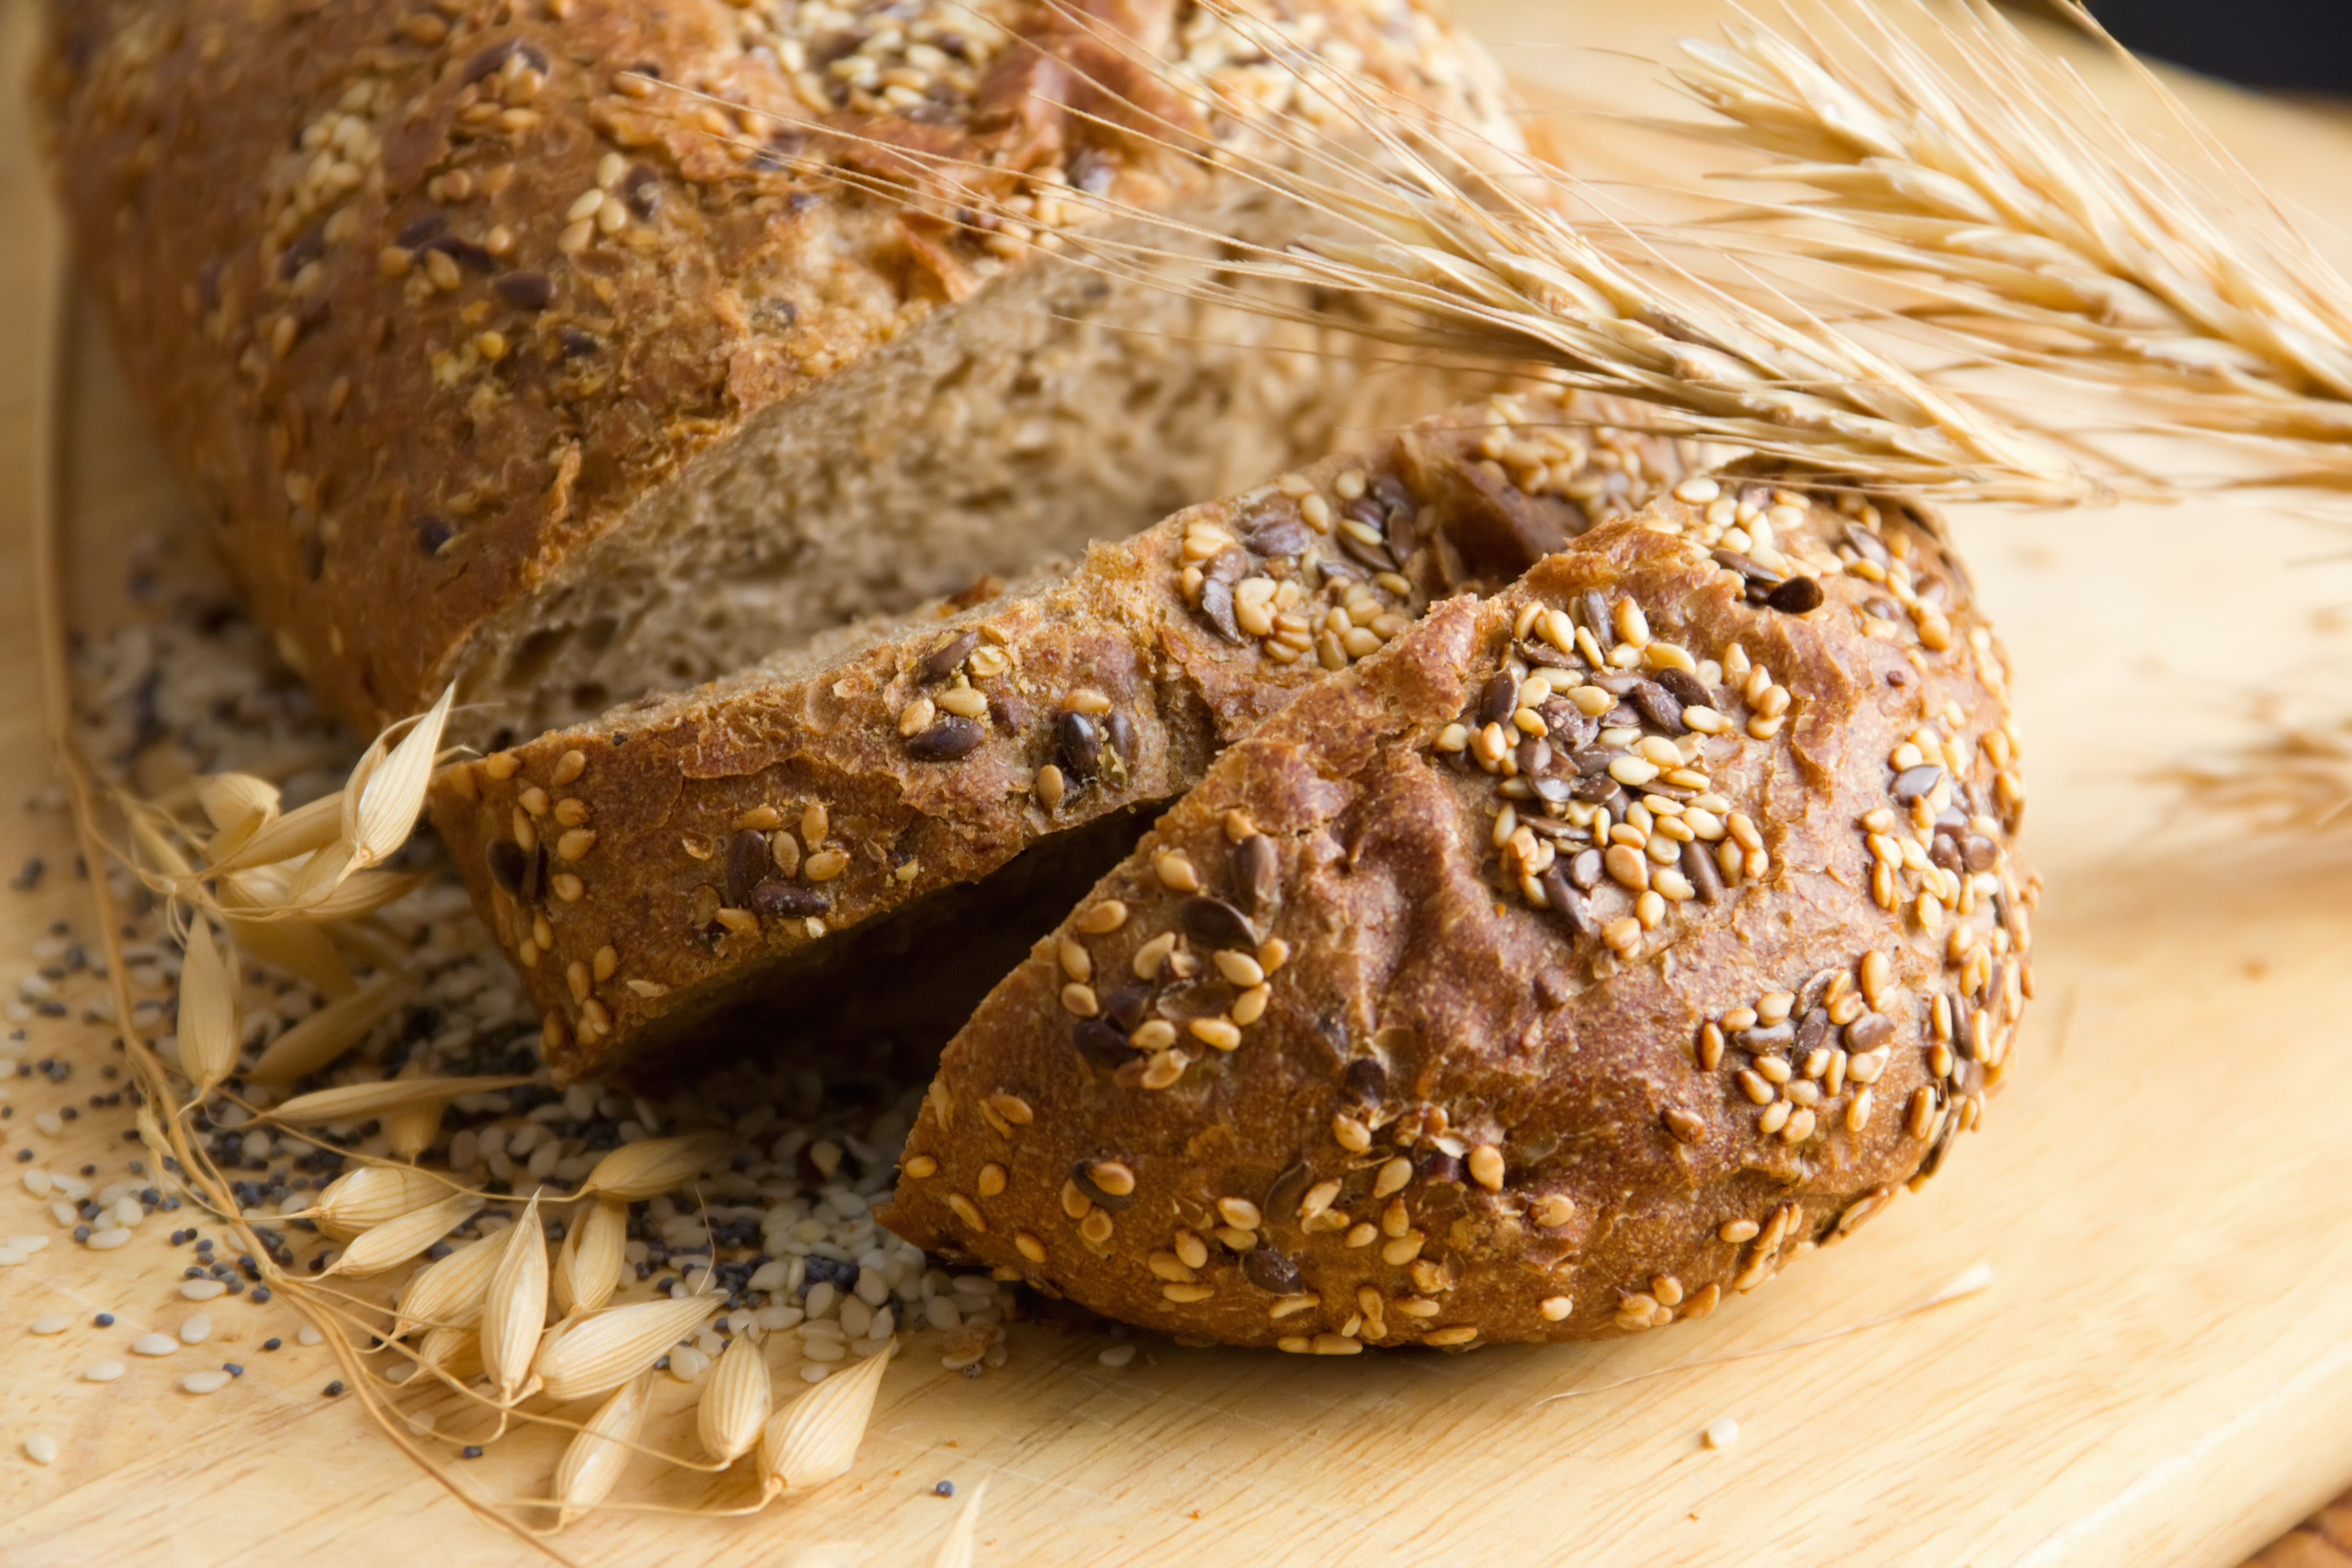 Szabad-e kenyeret enni a fogyókúra alatt? | tankerinfo.hu, Kenyer nelkuli fogyokura